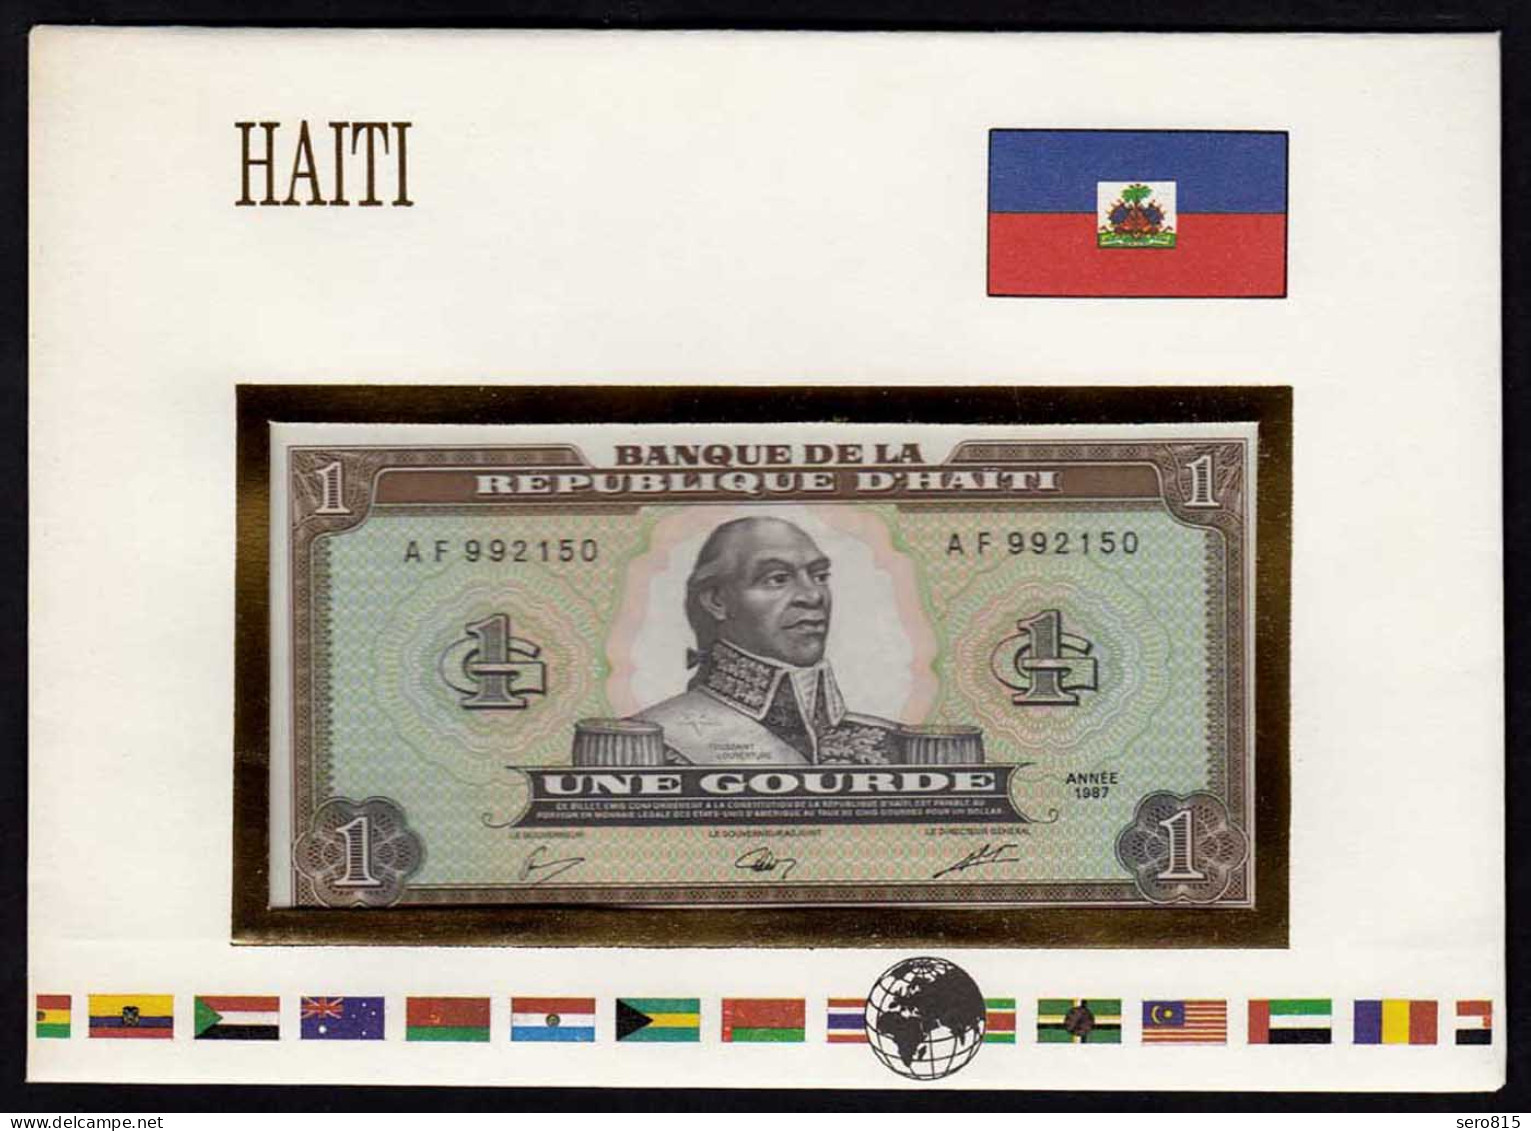 Haiti 1 Gourde Banknotenbrief Der Welt UNC   (15508 - Andere - Amerika